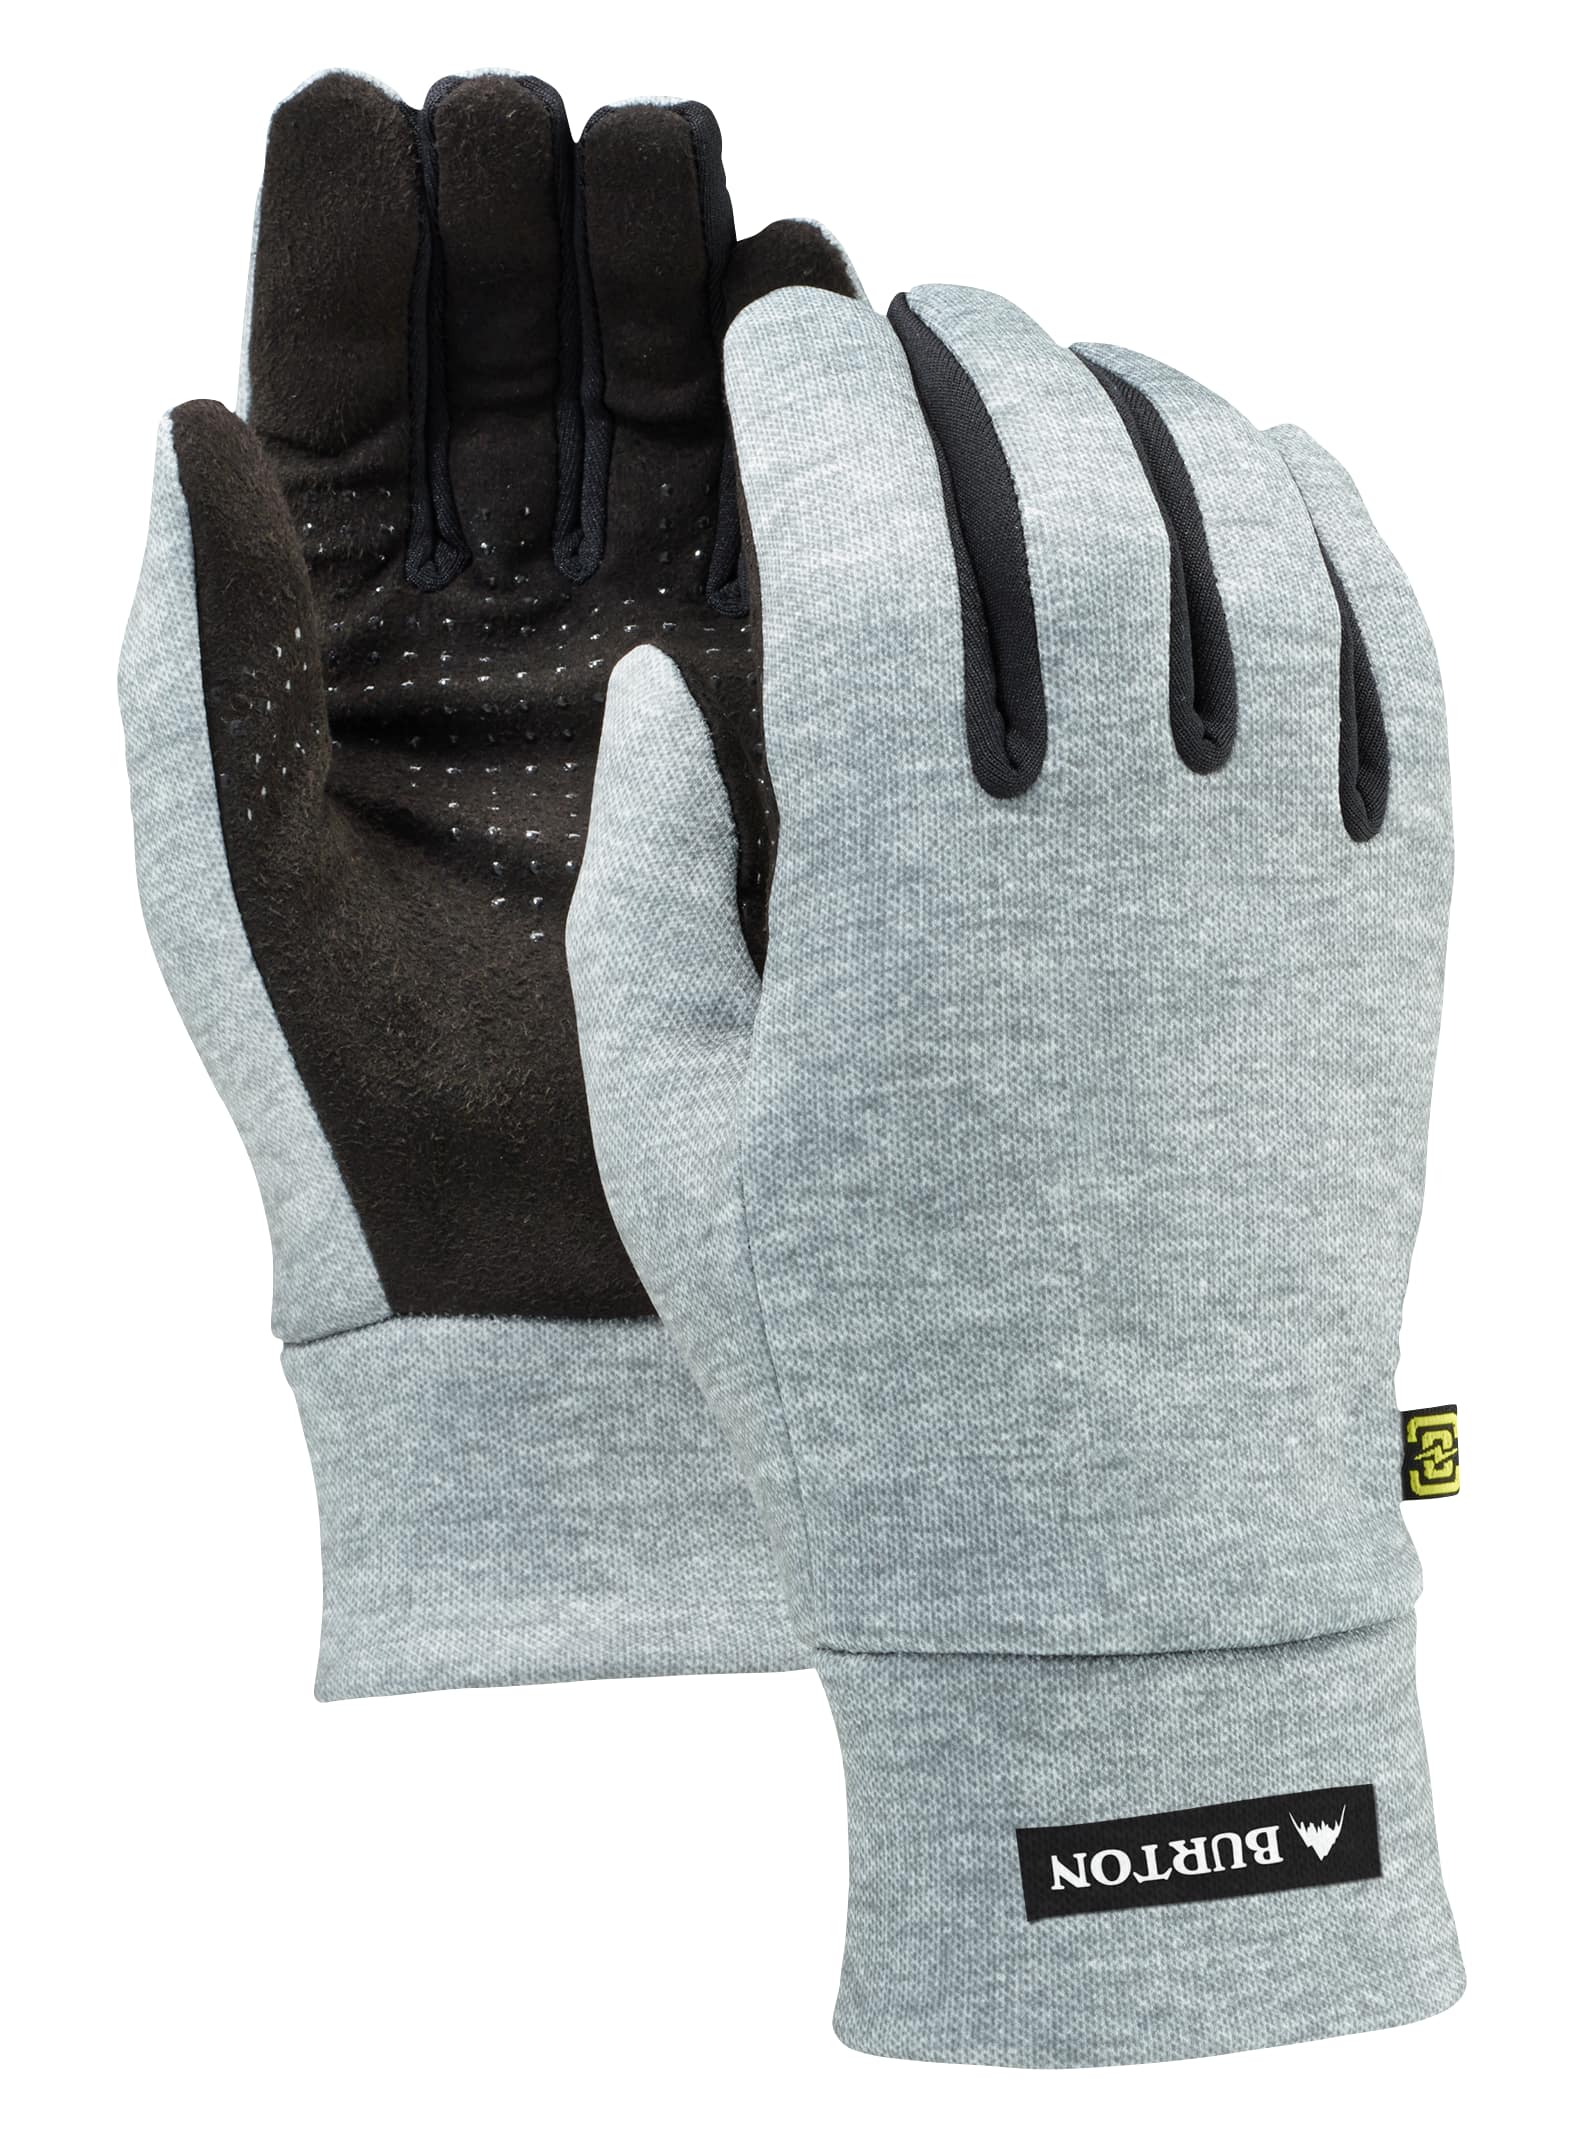 Men's Burton Touch N Go Glove | Burton.com Winter 2020 US